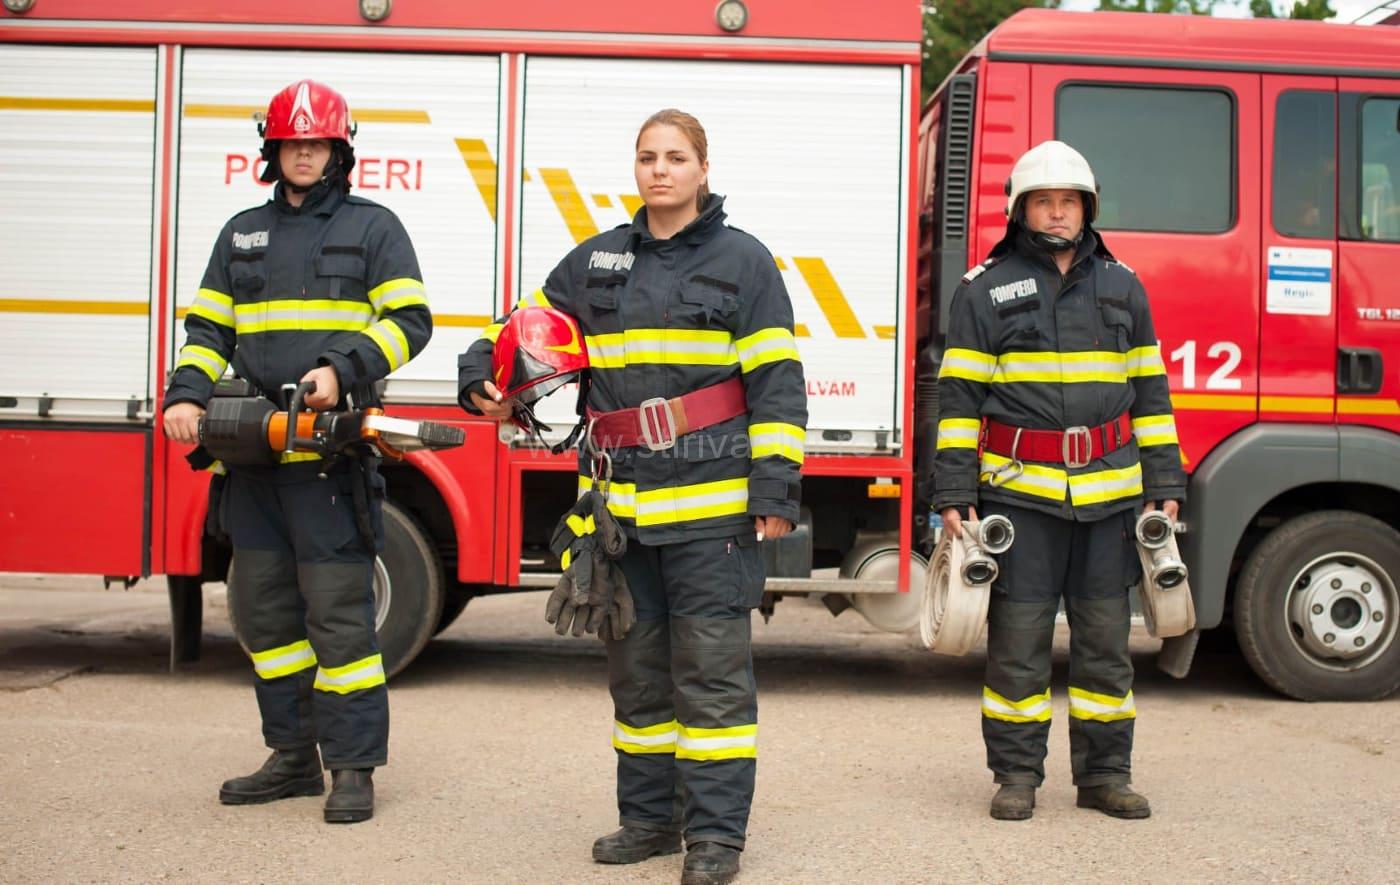 Poveștile oamenilor în uniformă (III). Ionela-Maria Fandarac, femeia-pompier de pe mașina de stingere a Detașamentului Bârlad 2